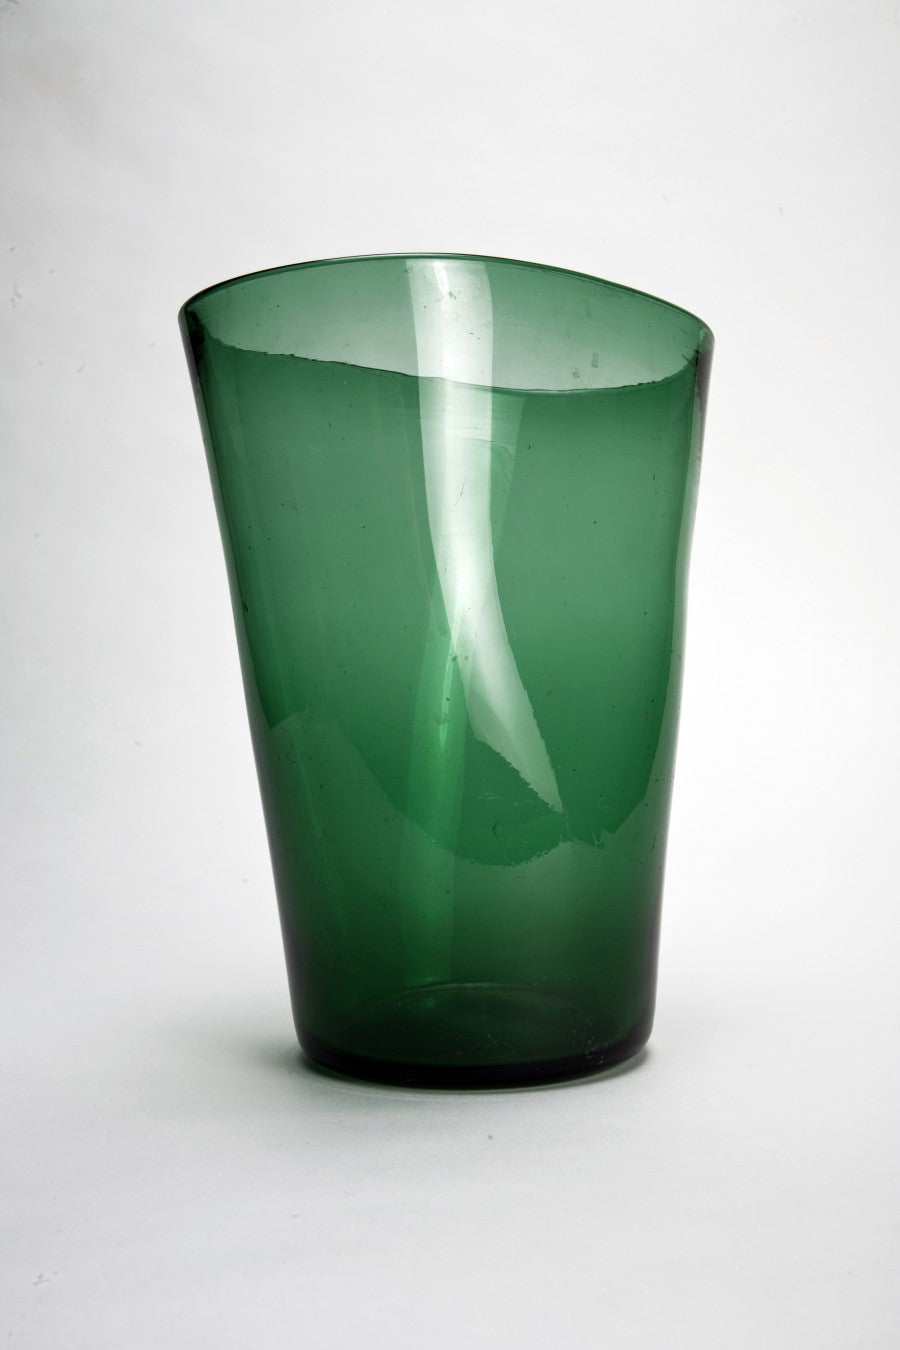 Grosse Grüne Vase 50' von Unbekannt